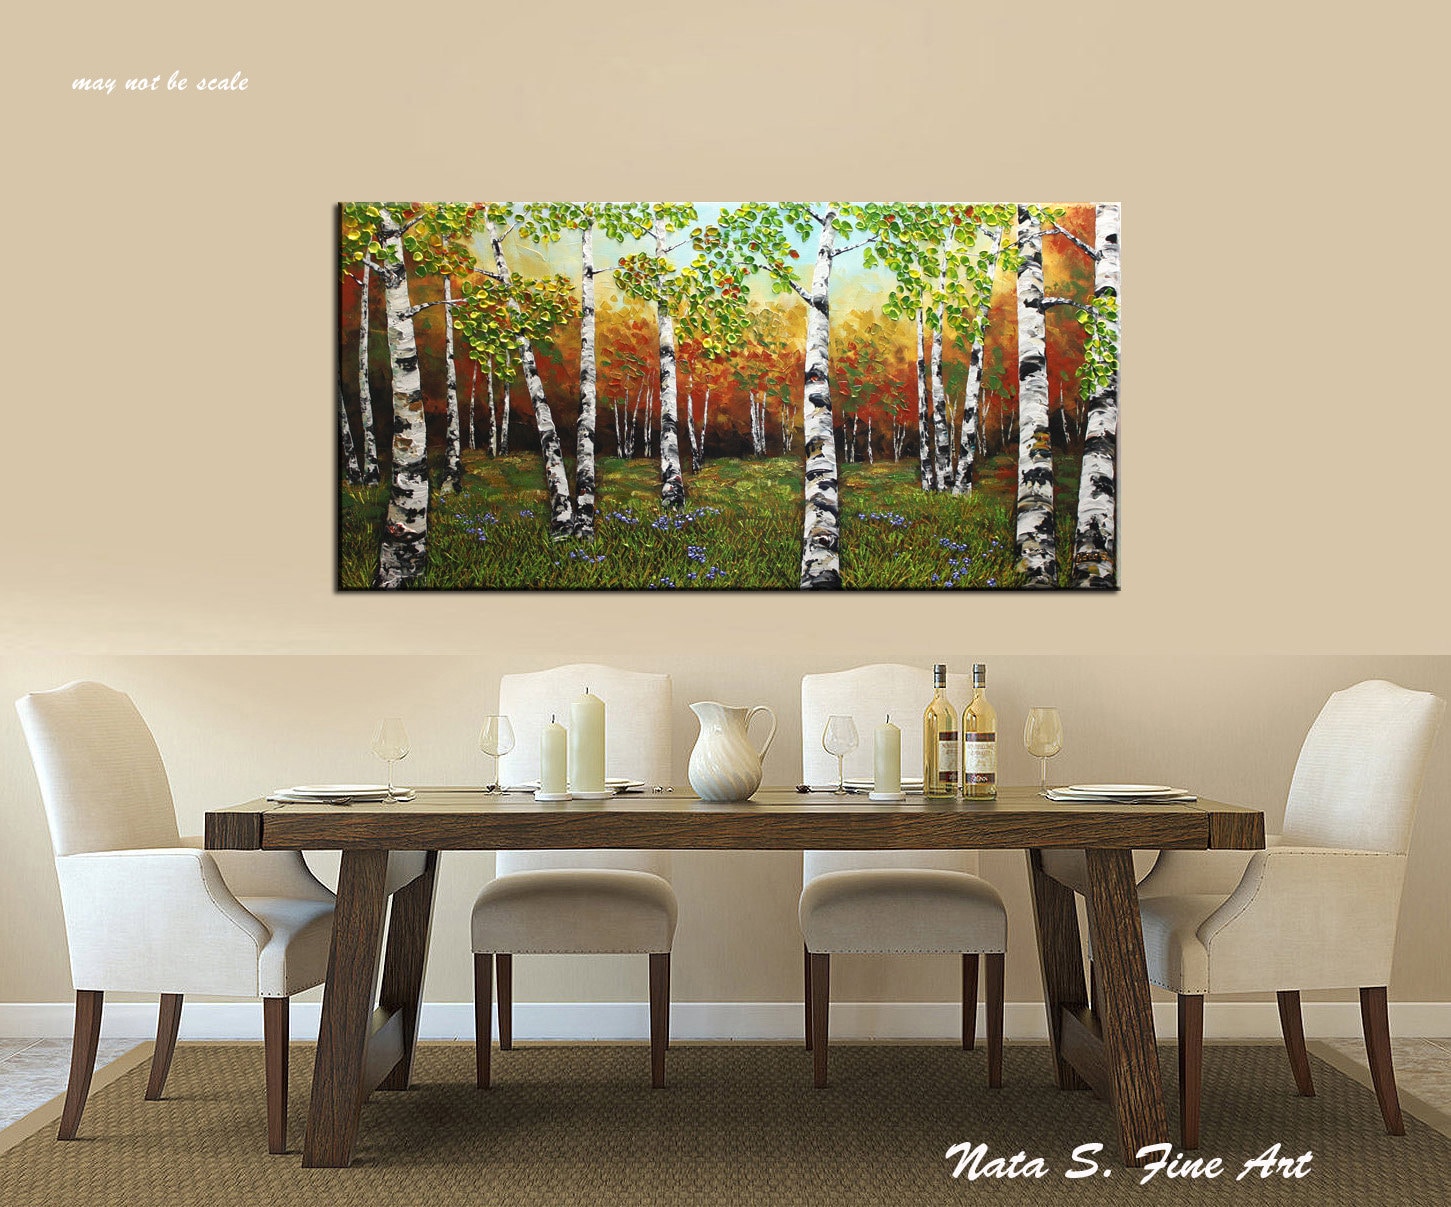 Wald Gemälde auf Leinwand Original pastosen S Decor Office Gemälde zum Gemälde Nata Aufhängen Home Spachtel Landschaft von Birkenwald fertig